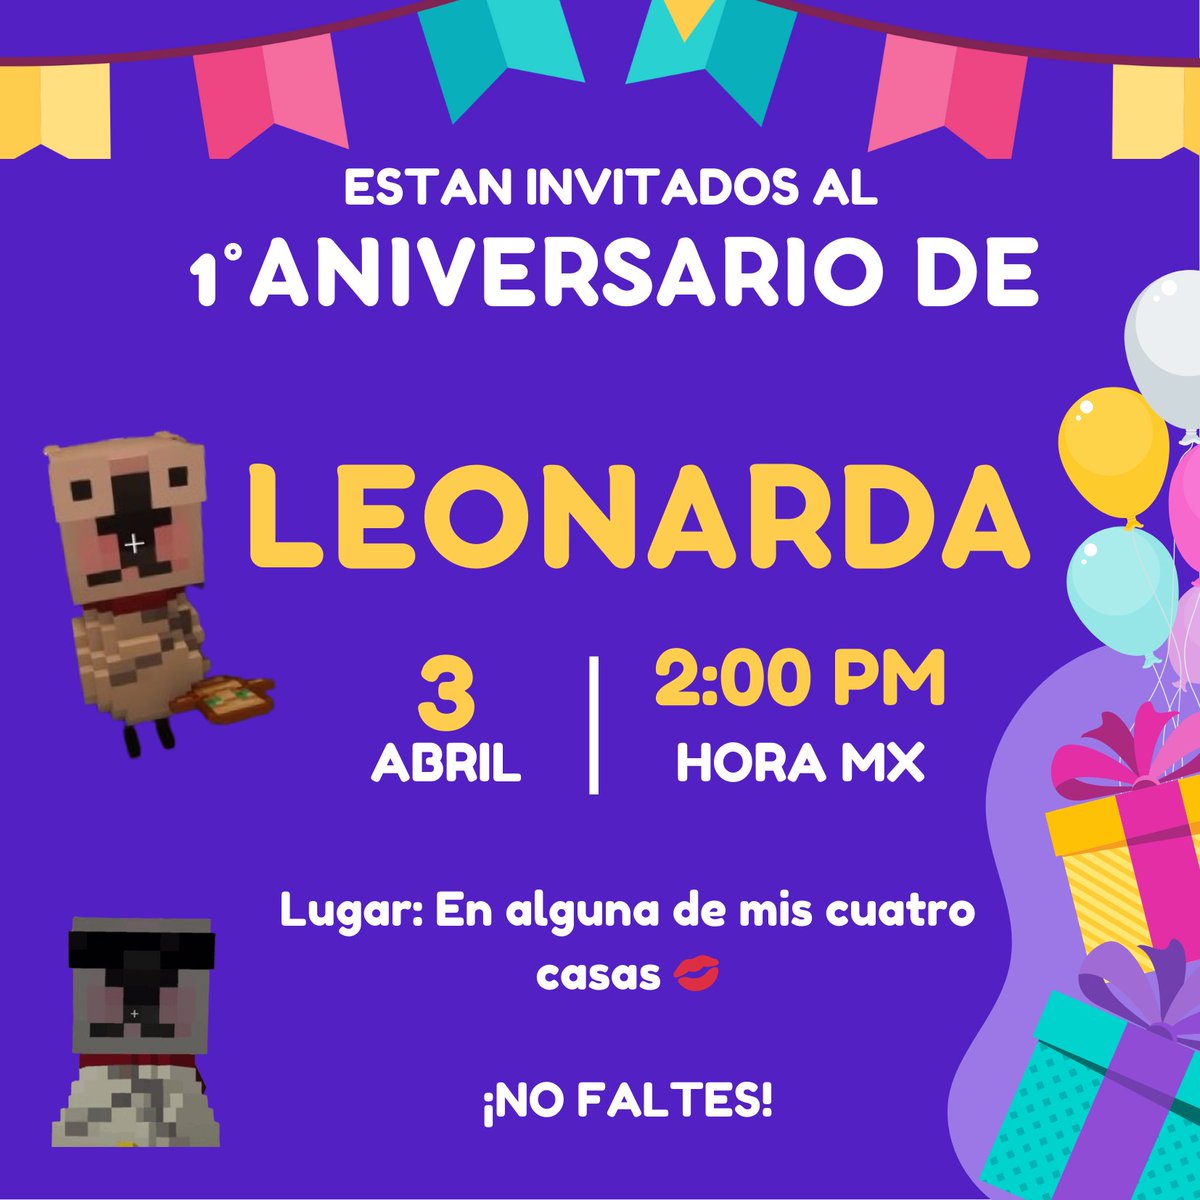 🎉 | Leonarda te invita a su cumpleaños! No faltes!! Les estaremos brindando unas dinámicas para celebrar con ella! 

#Leonarda1stYear #HappyBirthdayleo